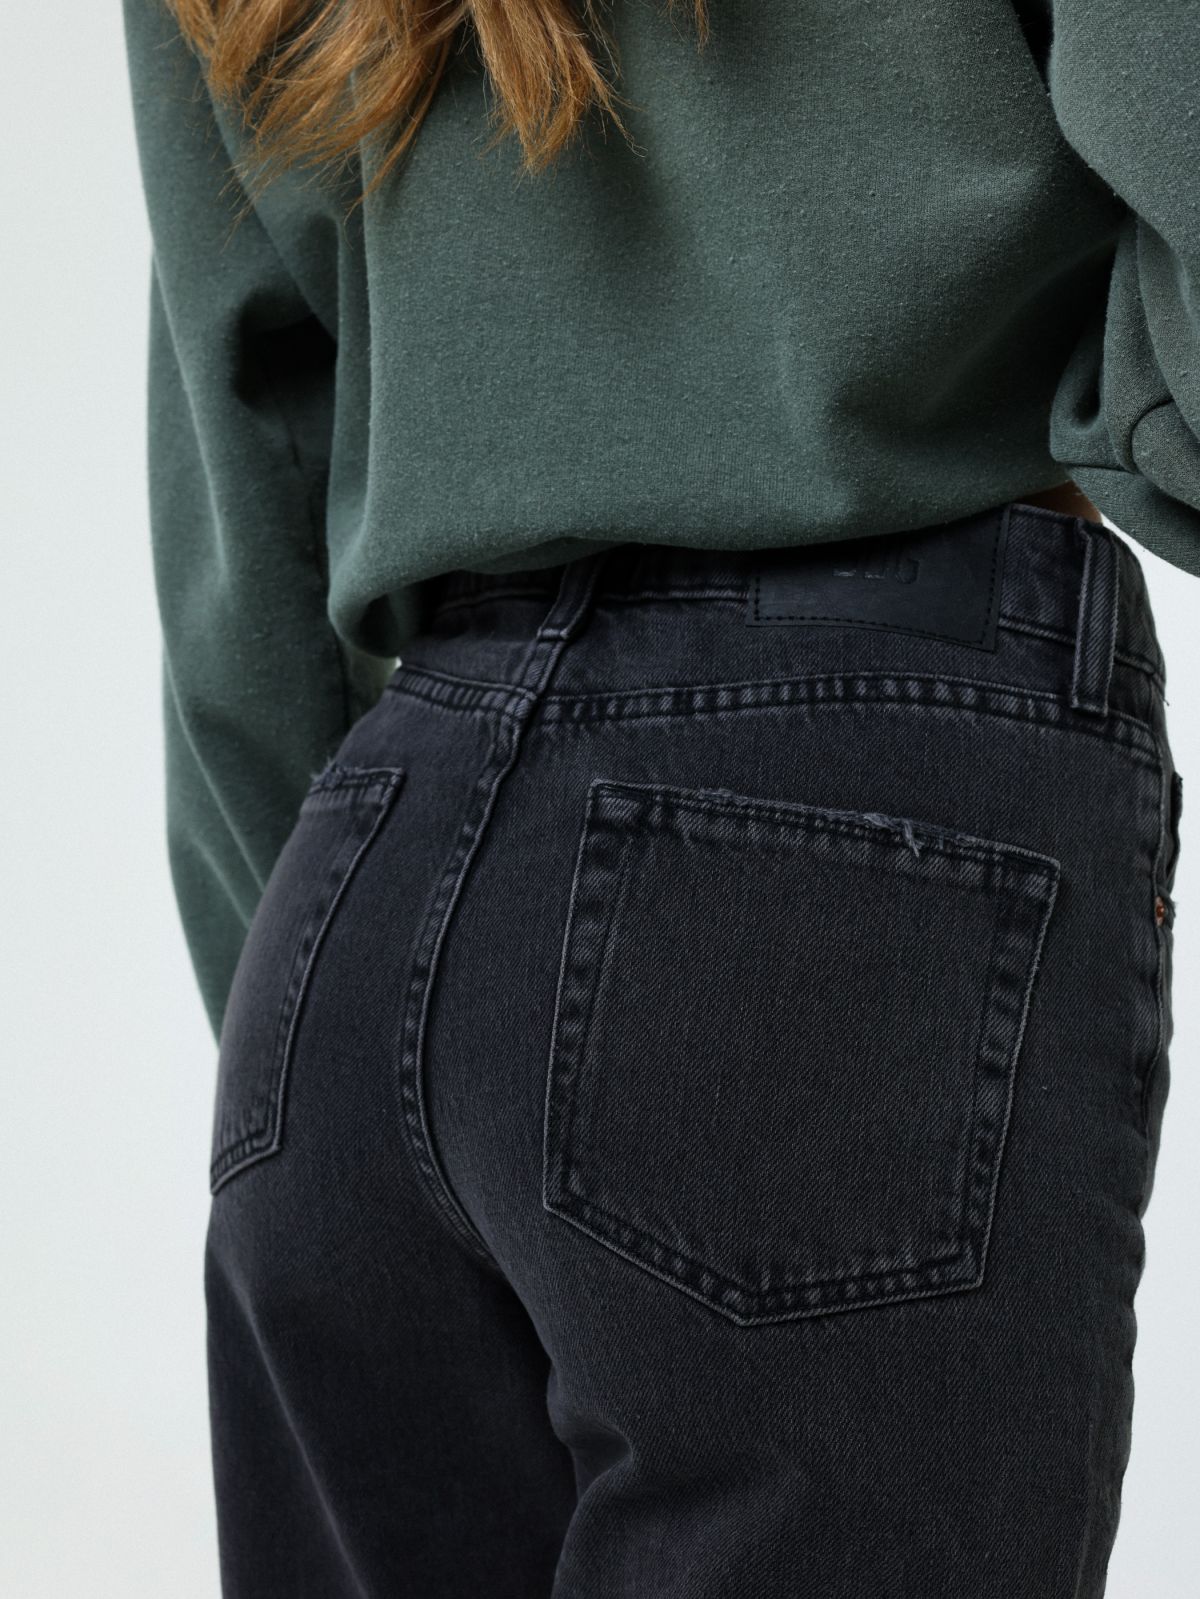  ג'ינס בגזרת Mom של URBAN OUTFITTERS